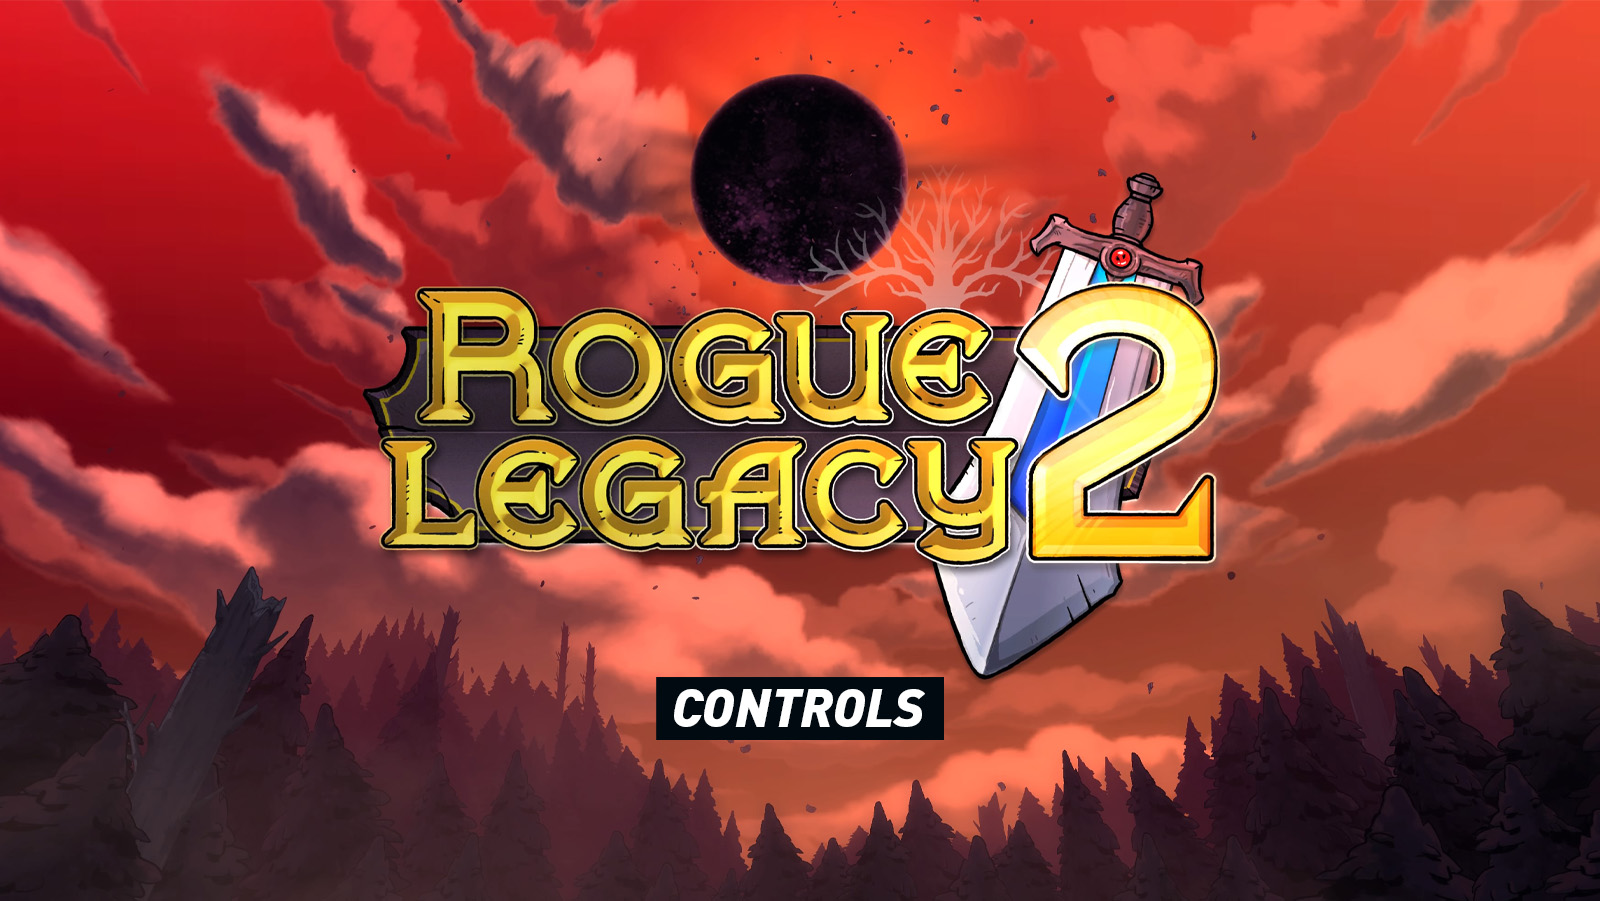 Rogue Legacy 2 – Controls